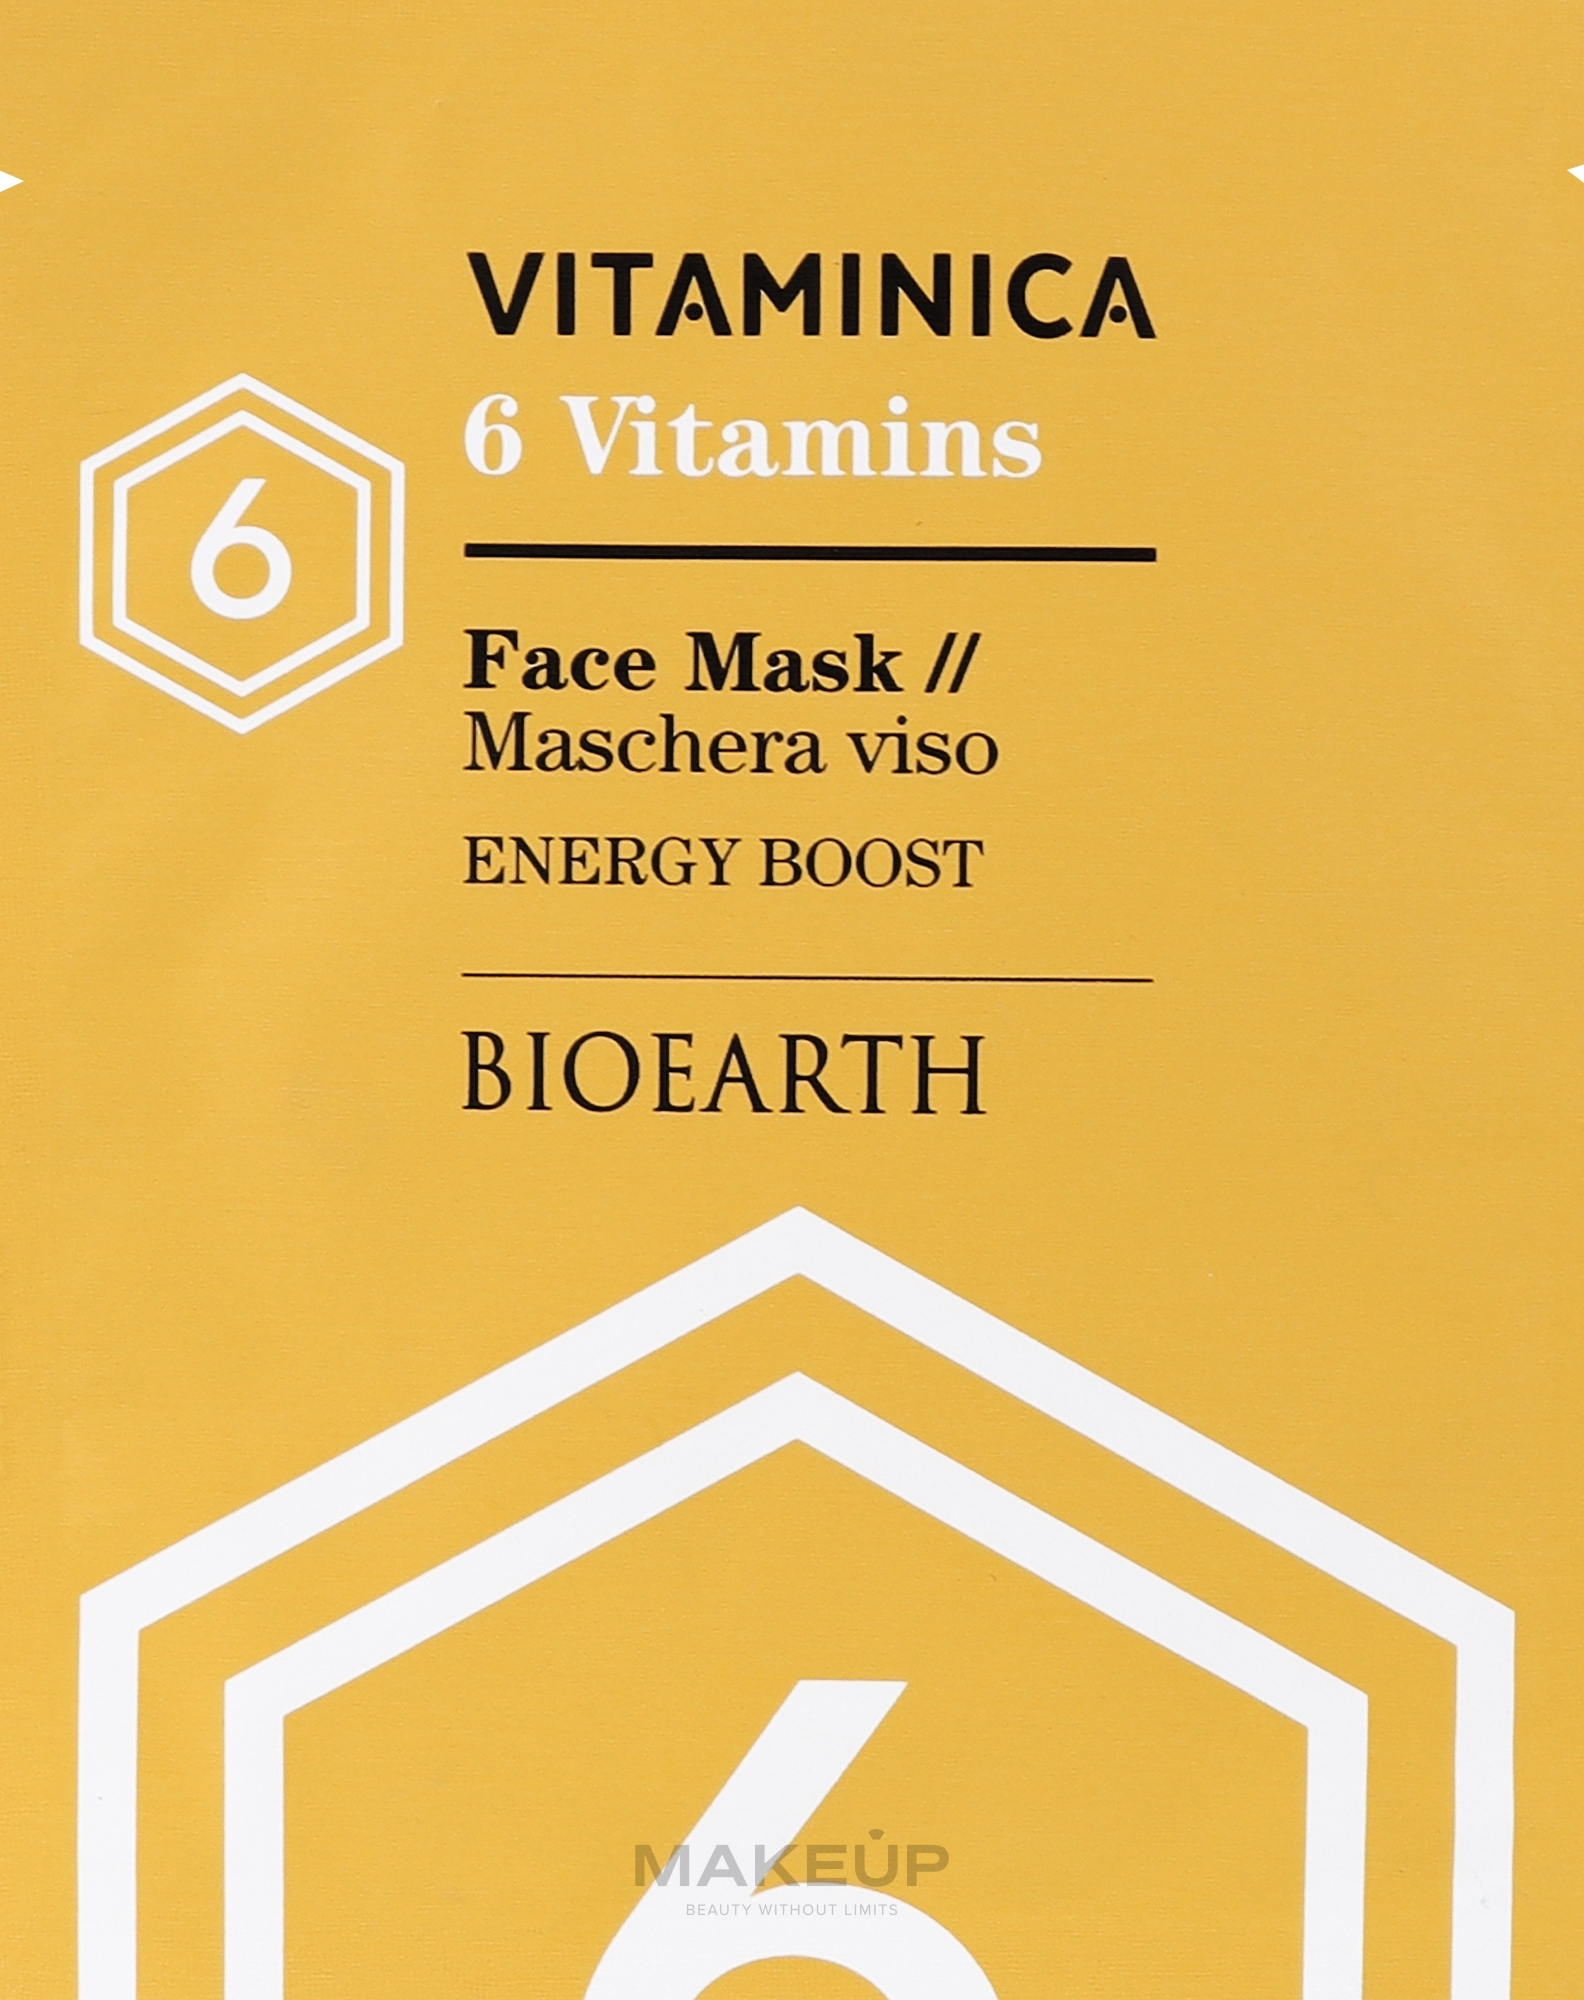 Celulozowa maseczka rewitalizująca, nawilżająca i energetyzująca skórę twarzy - Bioearth Vitaminica Single Sheet Face Mask 6 Vitamins — Zdjęcie 15 ml